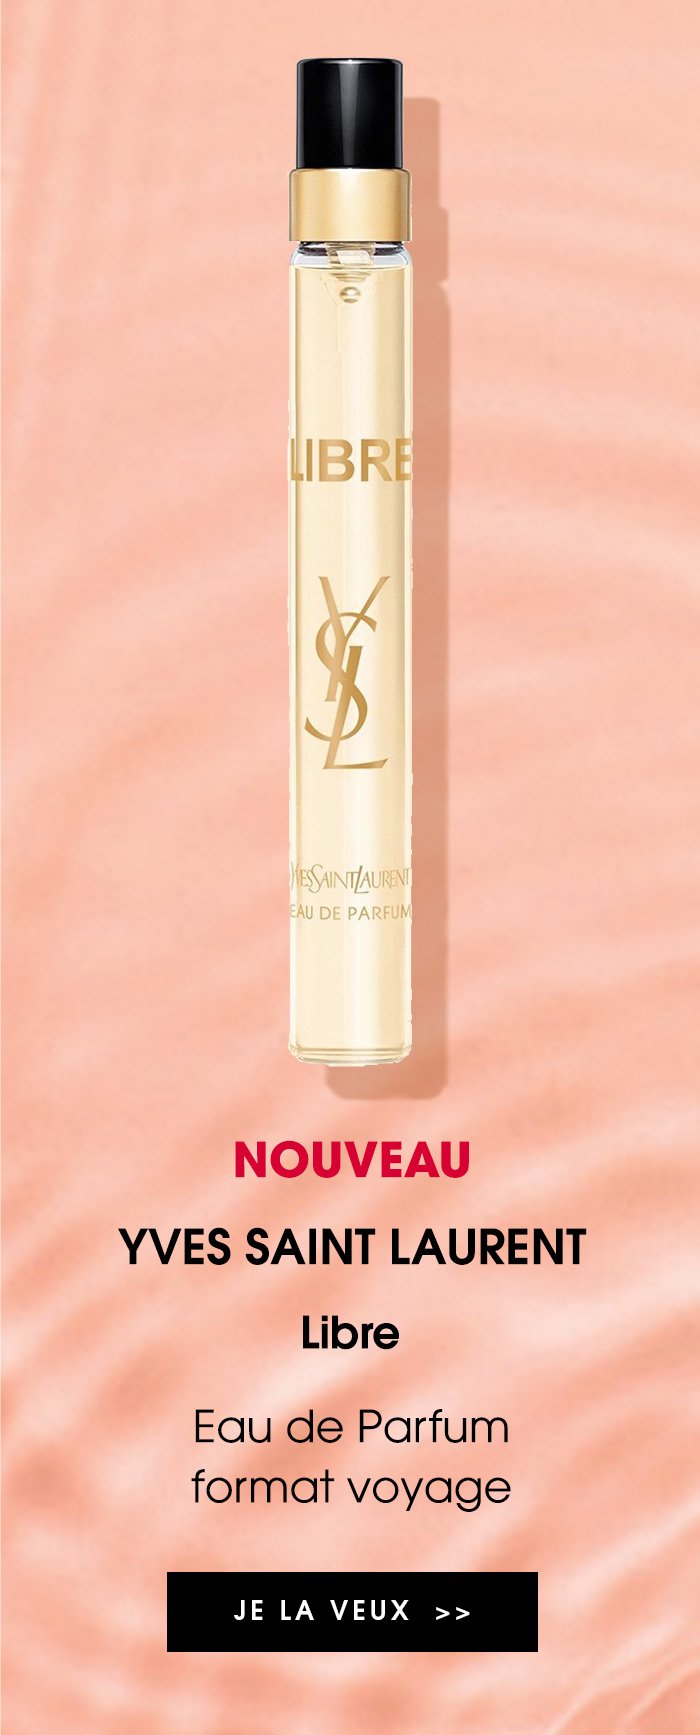 YVES SAINT LAURENT Libre - Eau de Parfum format voyage | JE LA VEUX >>